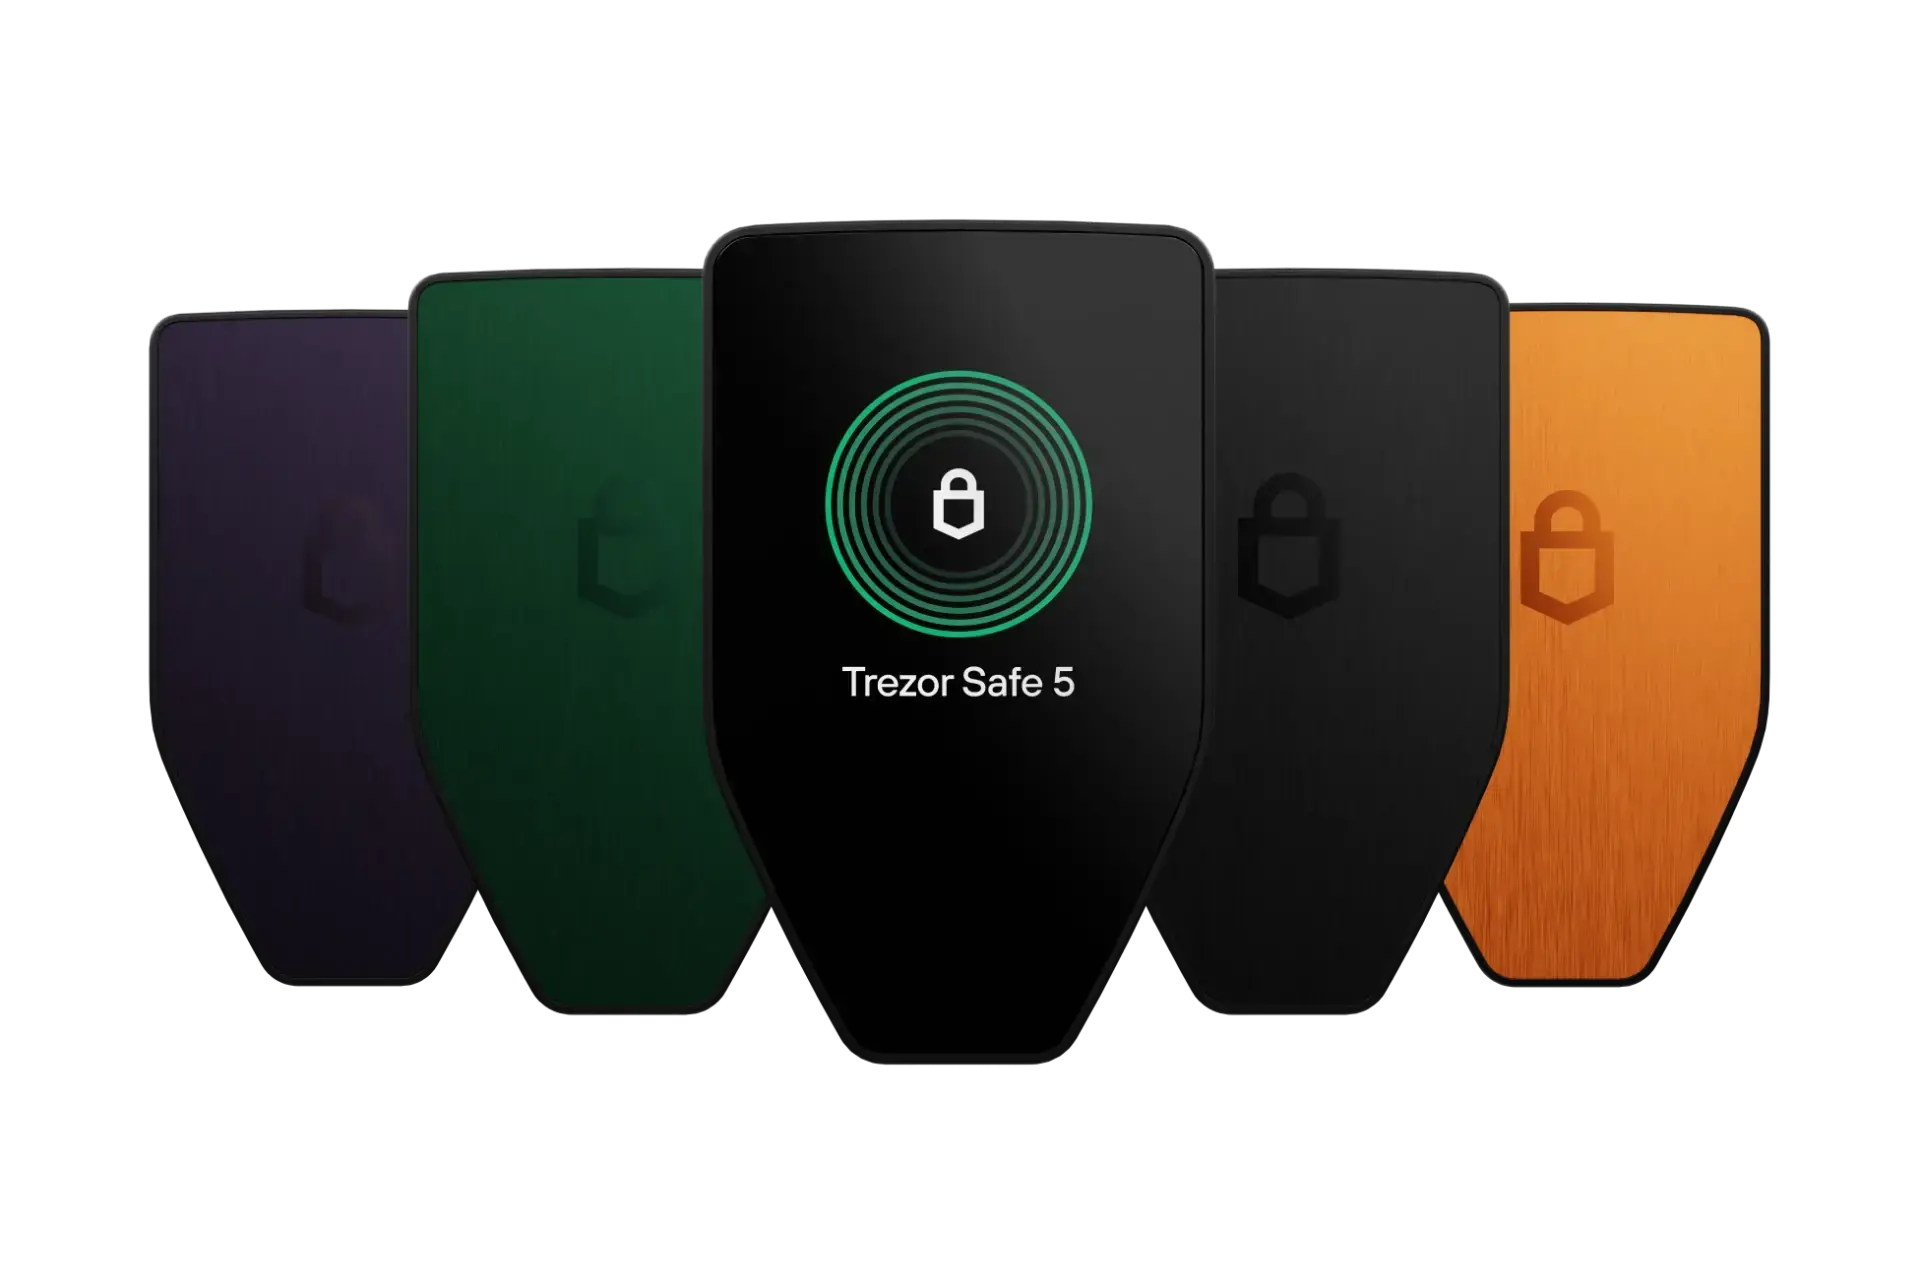 Trezor Safe 5 hardware wallet